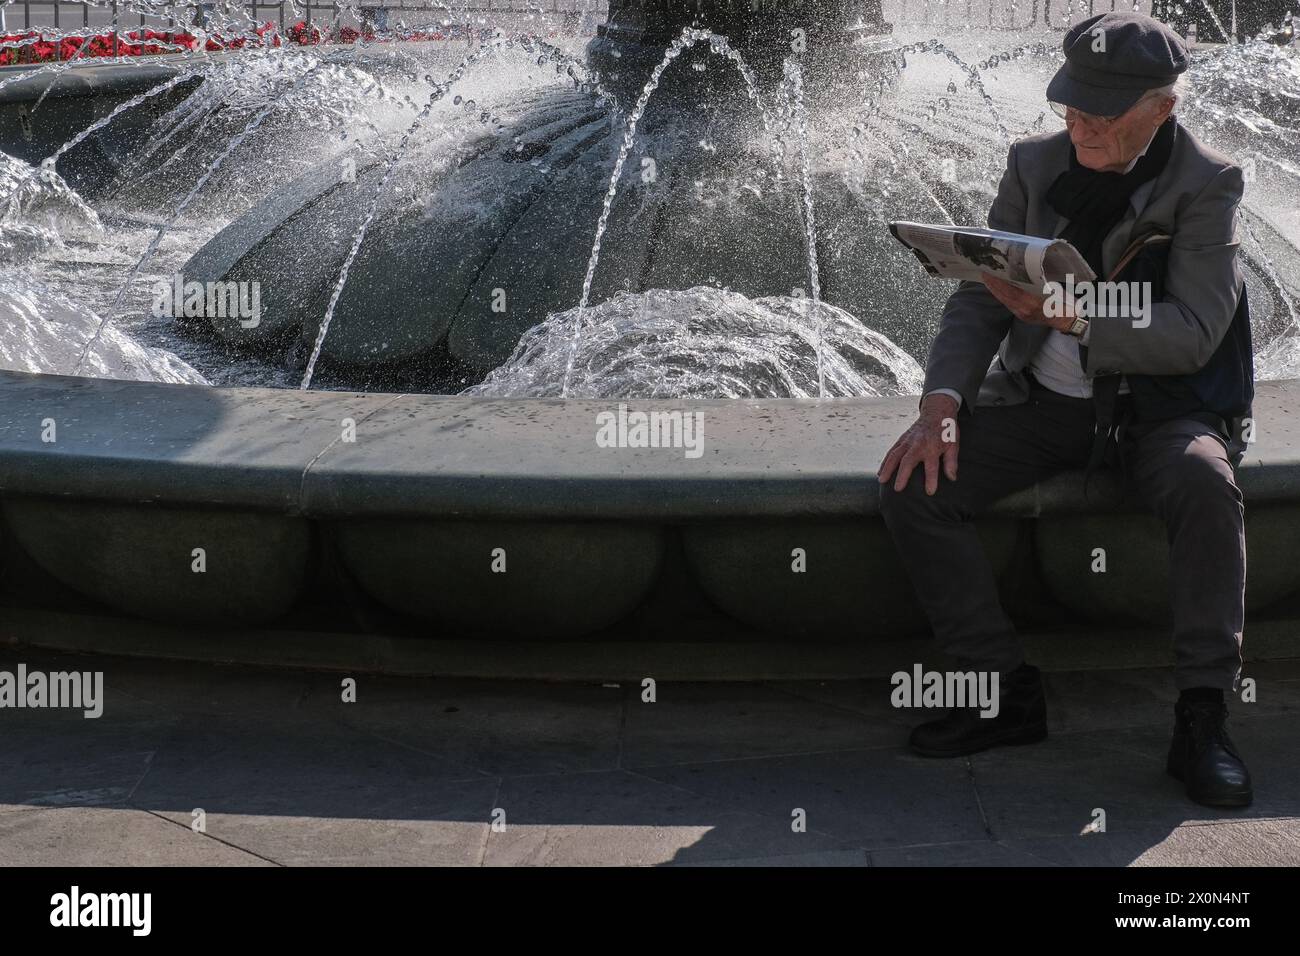 Jerusalem, Israel. April 2024. Ein älterer Mann liest eine Zeitung in der Nähe eines Springbrunnens am Pariser Platz, als Israelis am Rande wegen drohender iranischer Luftangriffe stehen. Quelle: Nir Alon/Alamy Live News Stockfoto